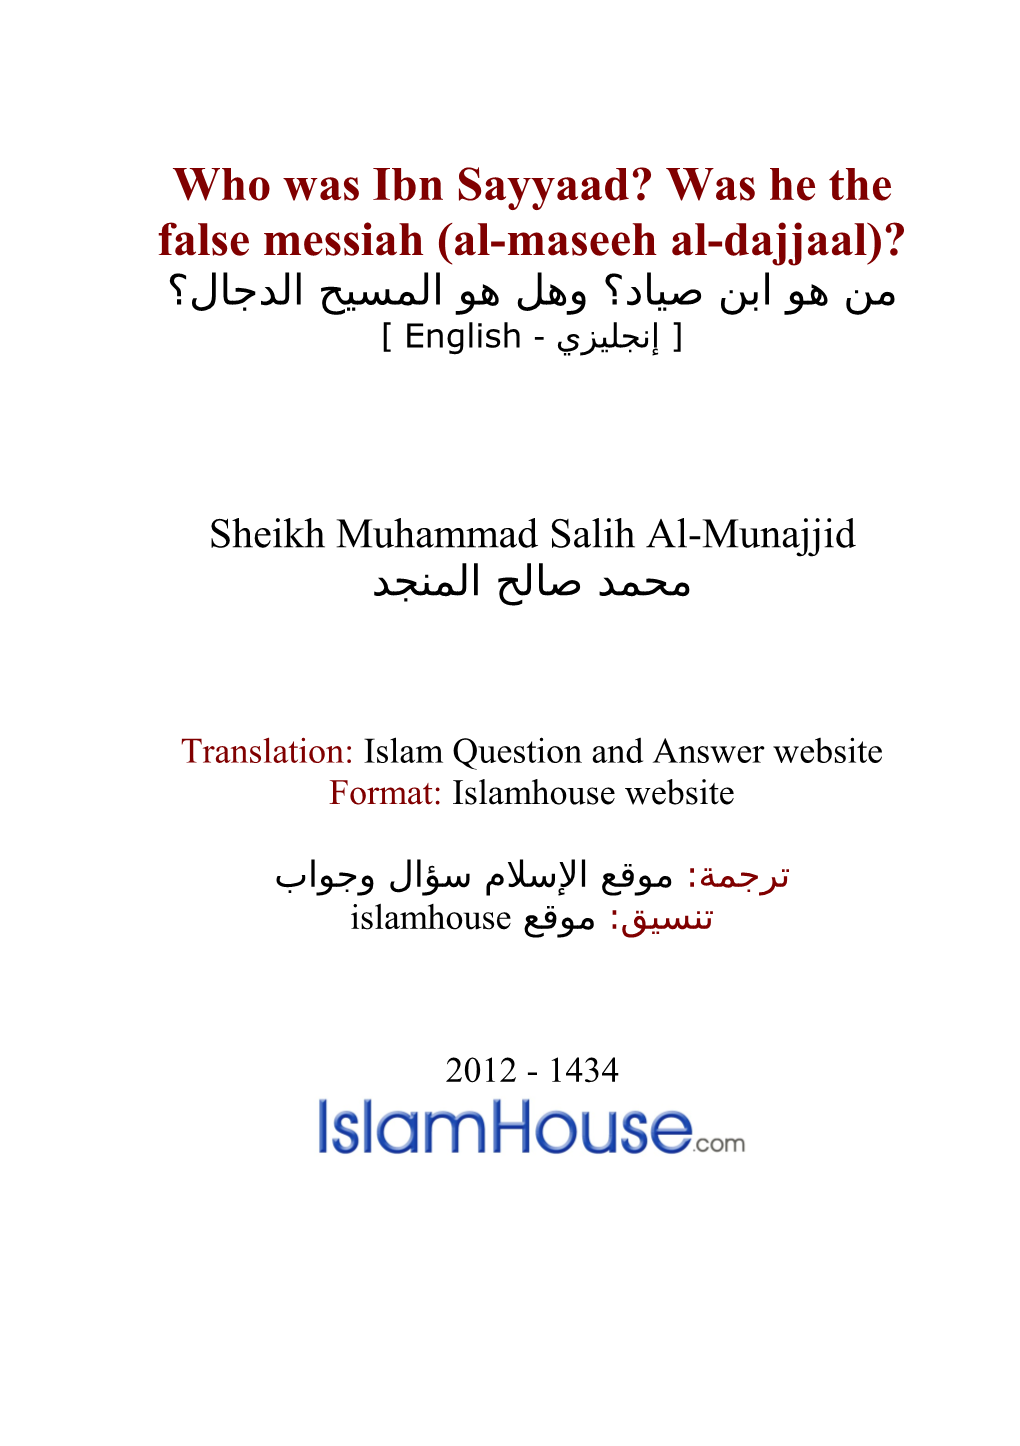 Who Was Ibn Sayyaad? Was He the False Messiah (Al-Maseeh Al-Dajjaal)?